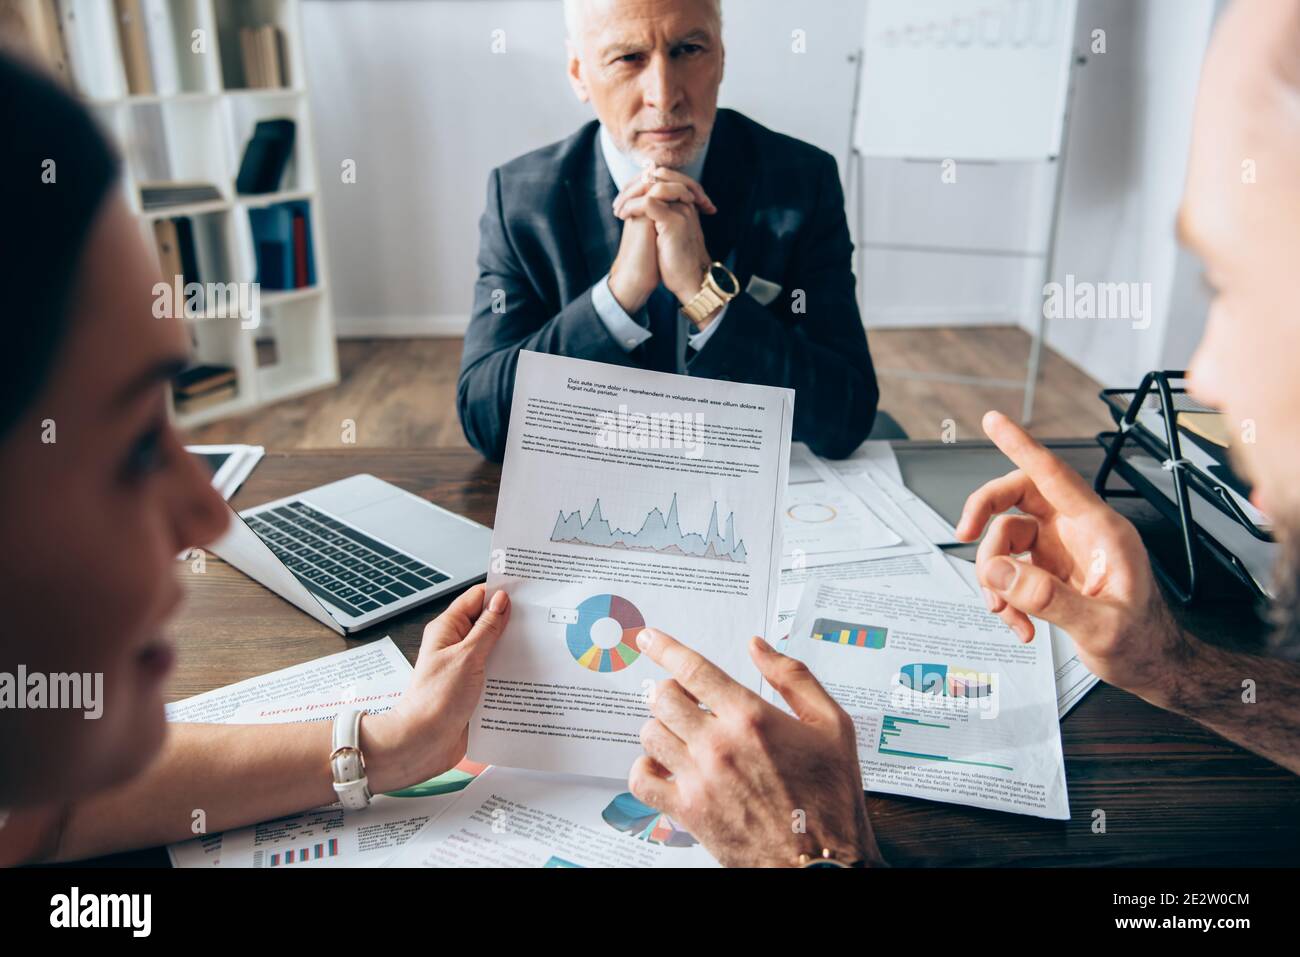 Homme d'affaires pointant du doigt sur un document avec des graphiques près d'un collègue et investisseur sur fond flou pendant la consultation Banque D'Images